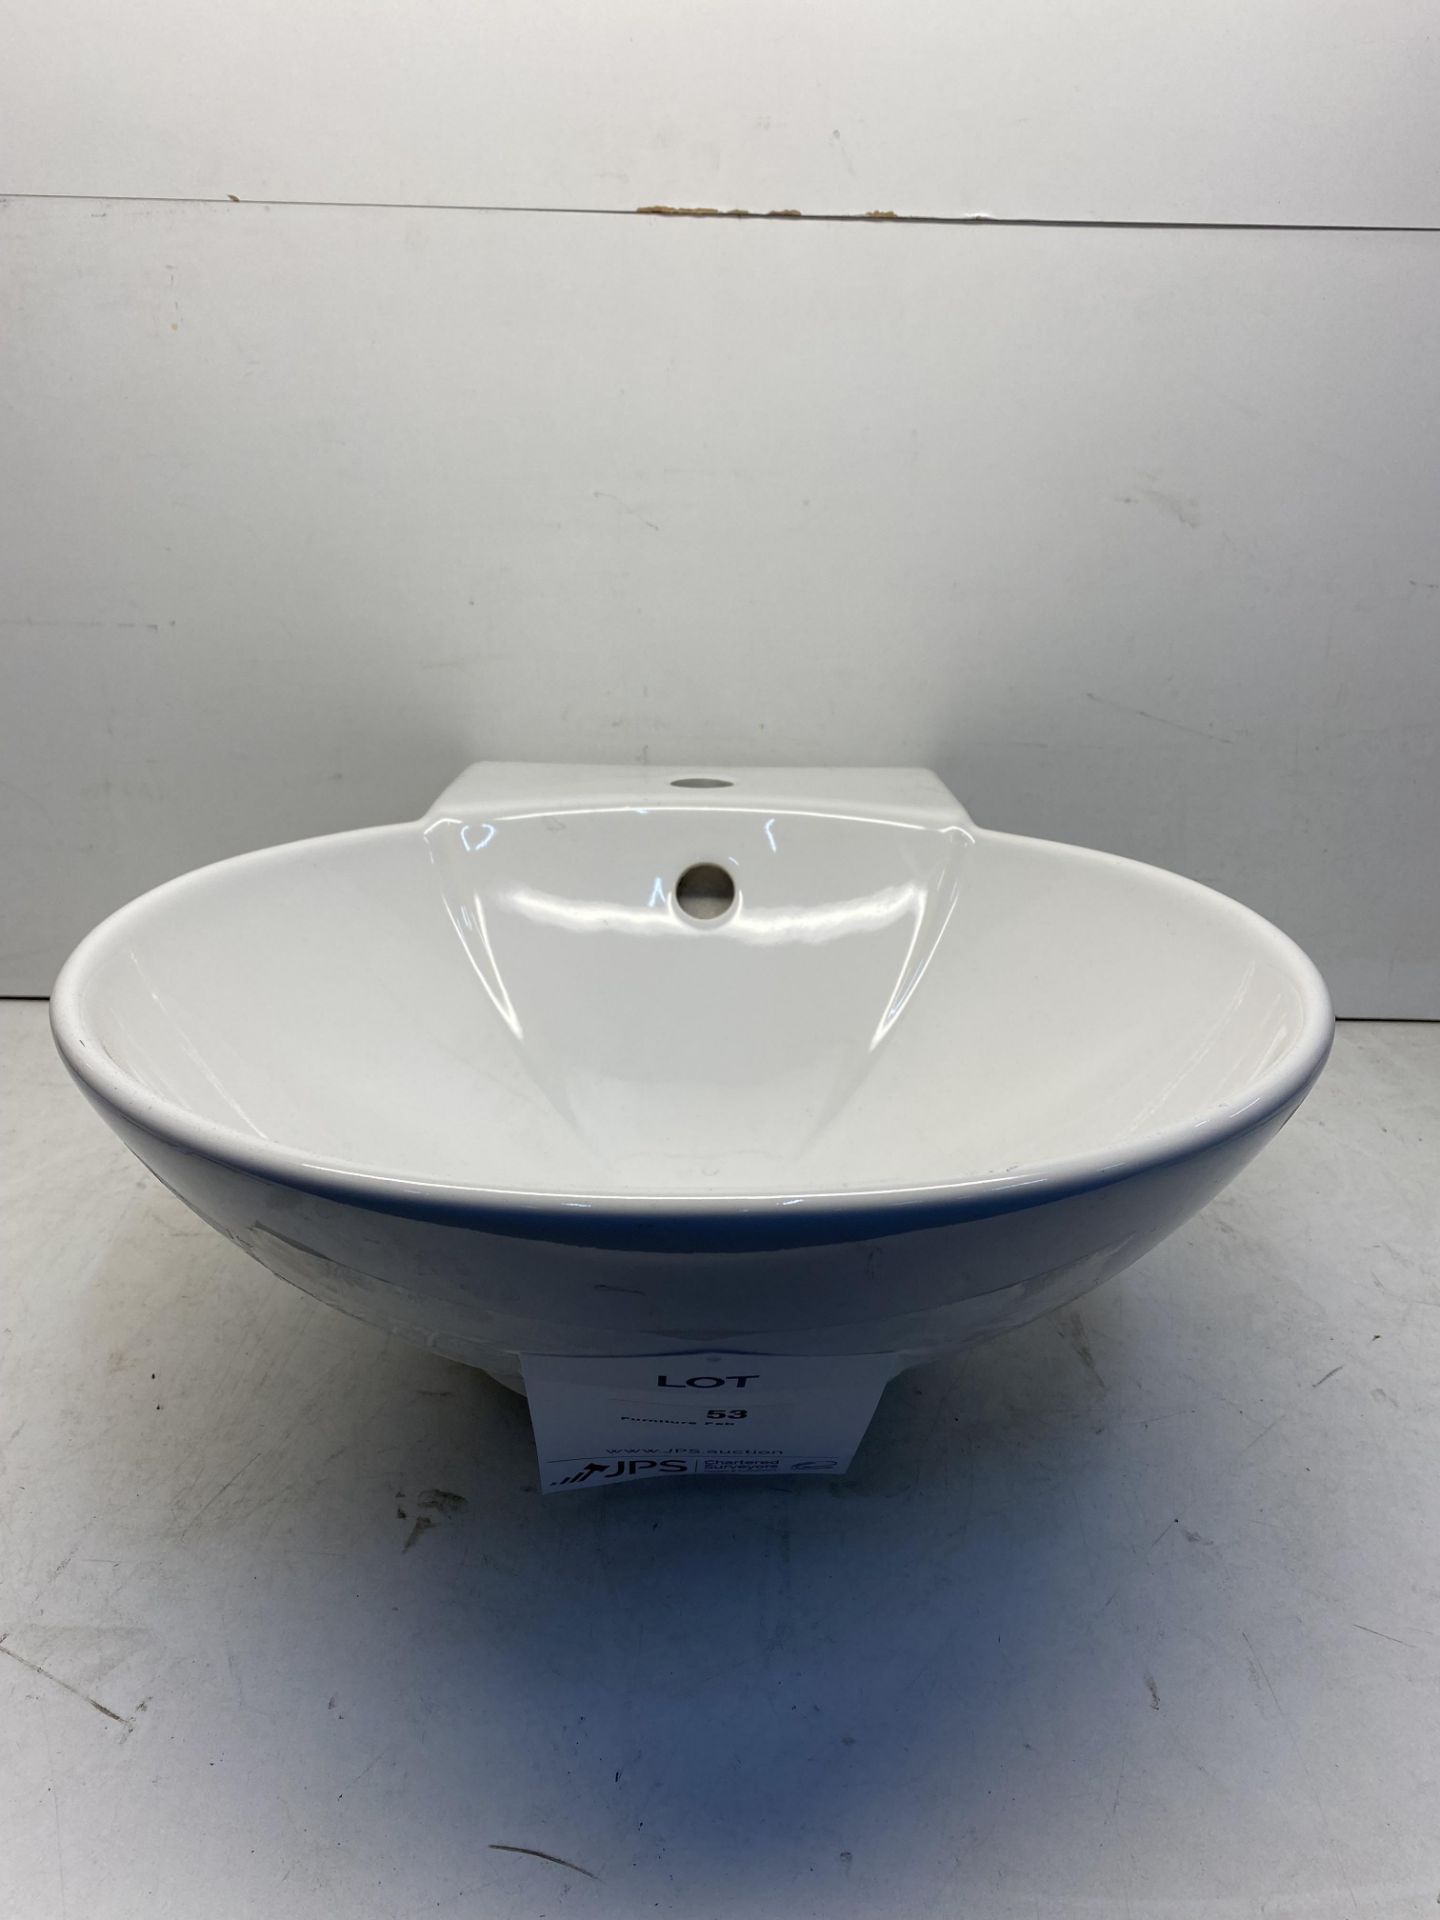 White Oval Ceramic Wash Basin - Image 2 of 4